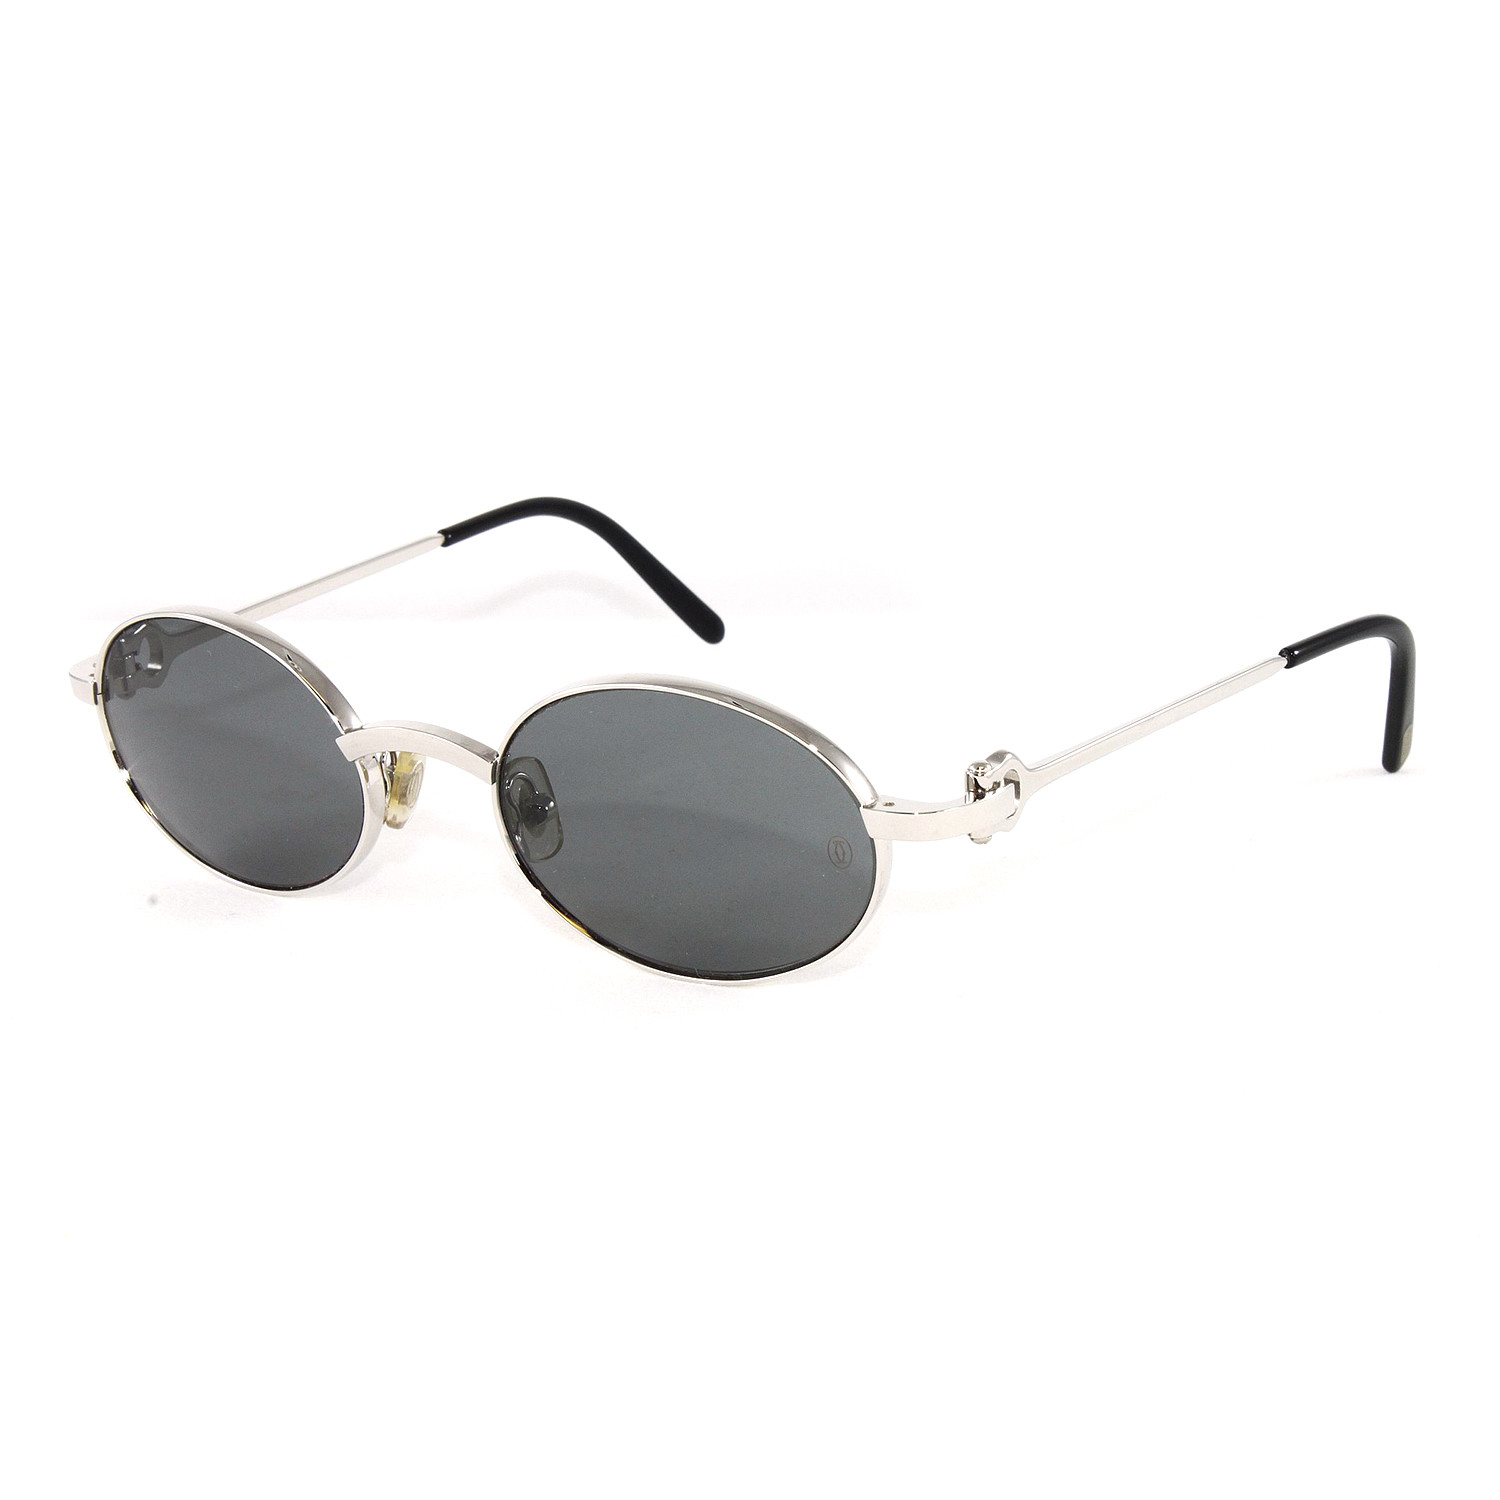 Men's T8200314 Spider Sunglasses 